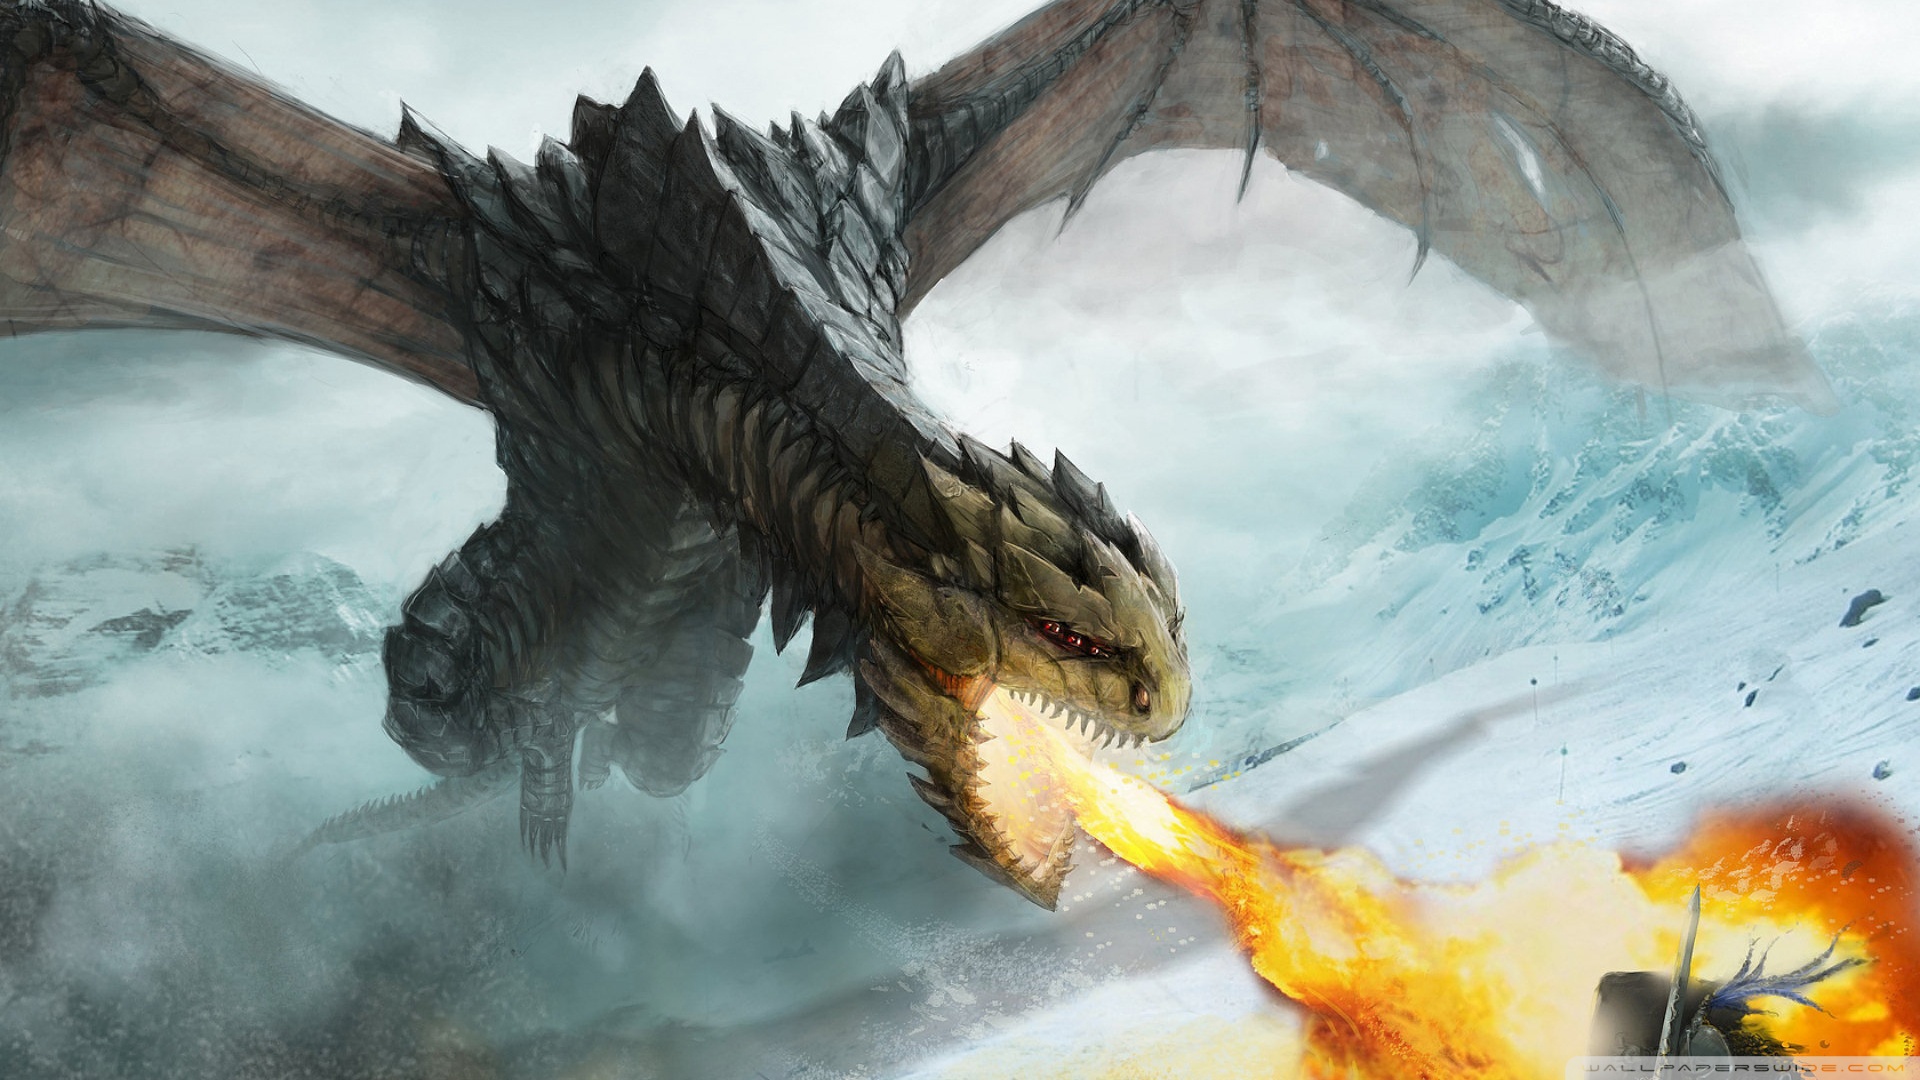 Dragon Fire HD desktop wallpaper : High Definition : Fullscreen ...